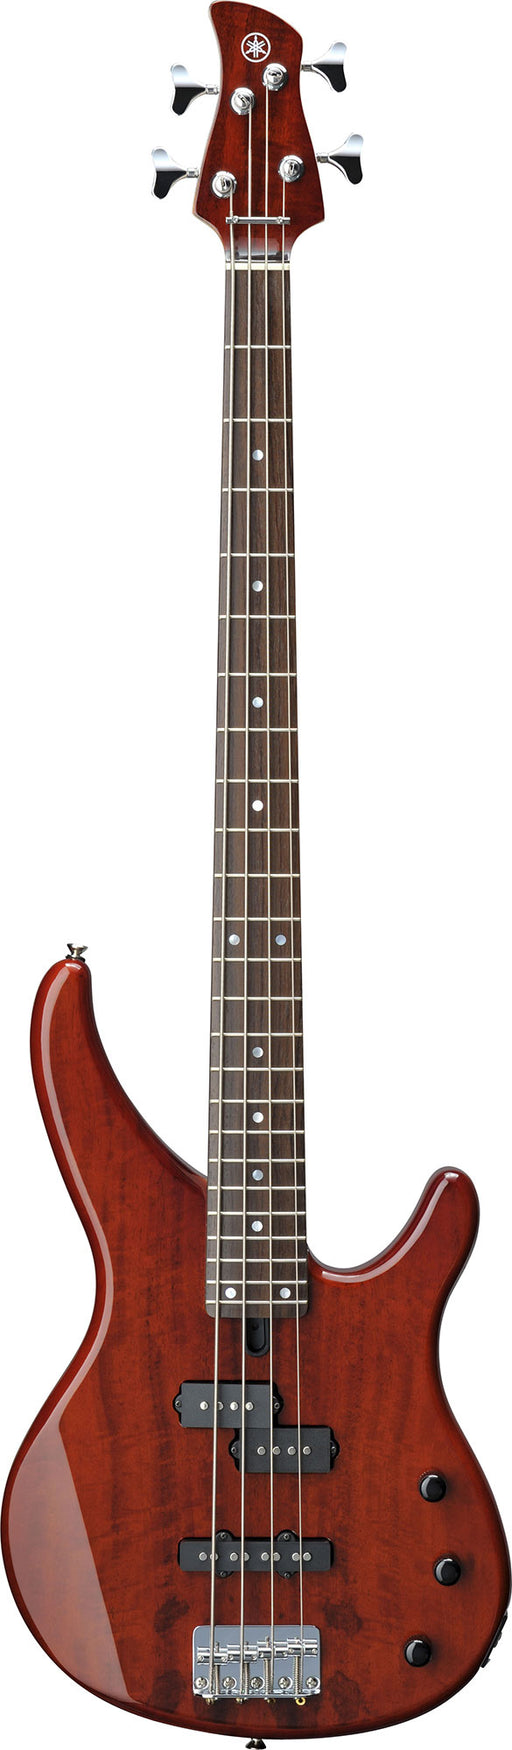 Yamaha TRBX174EW 4 String Bass Guitar - Root Beer - New